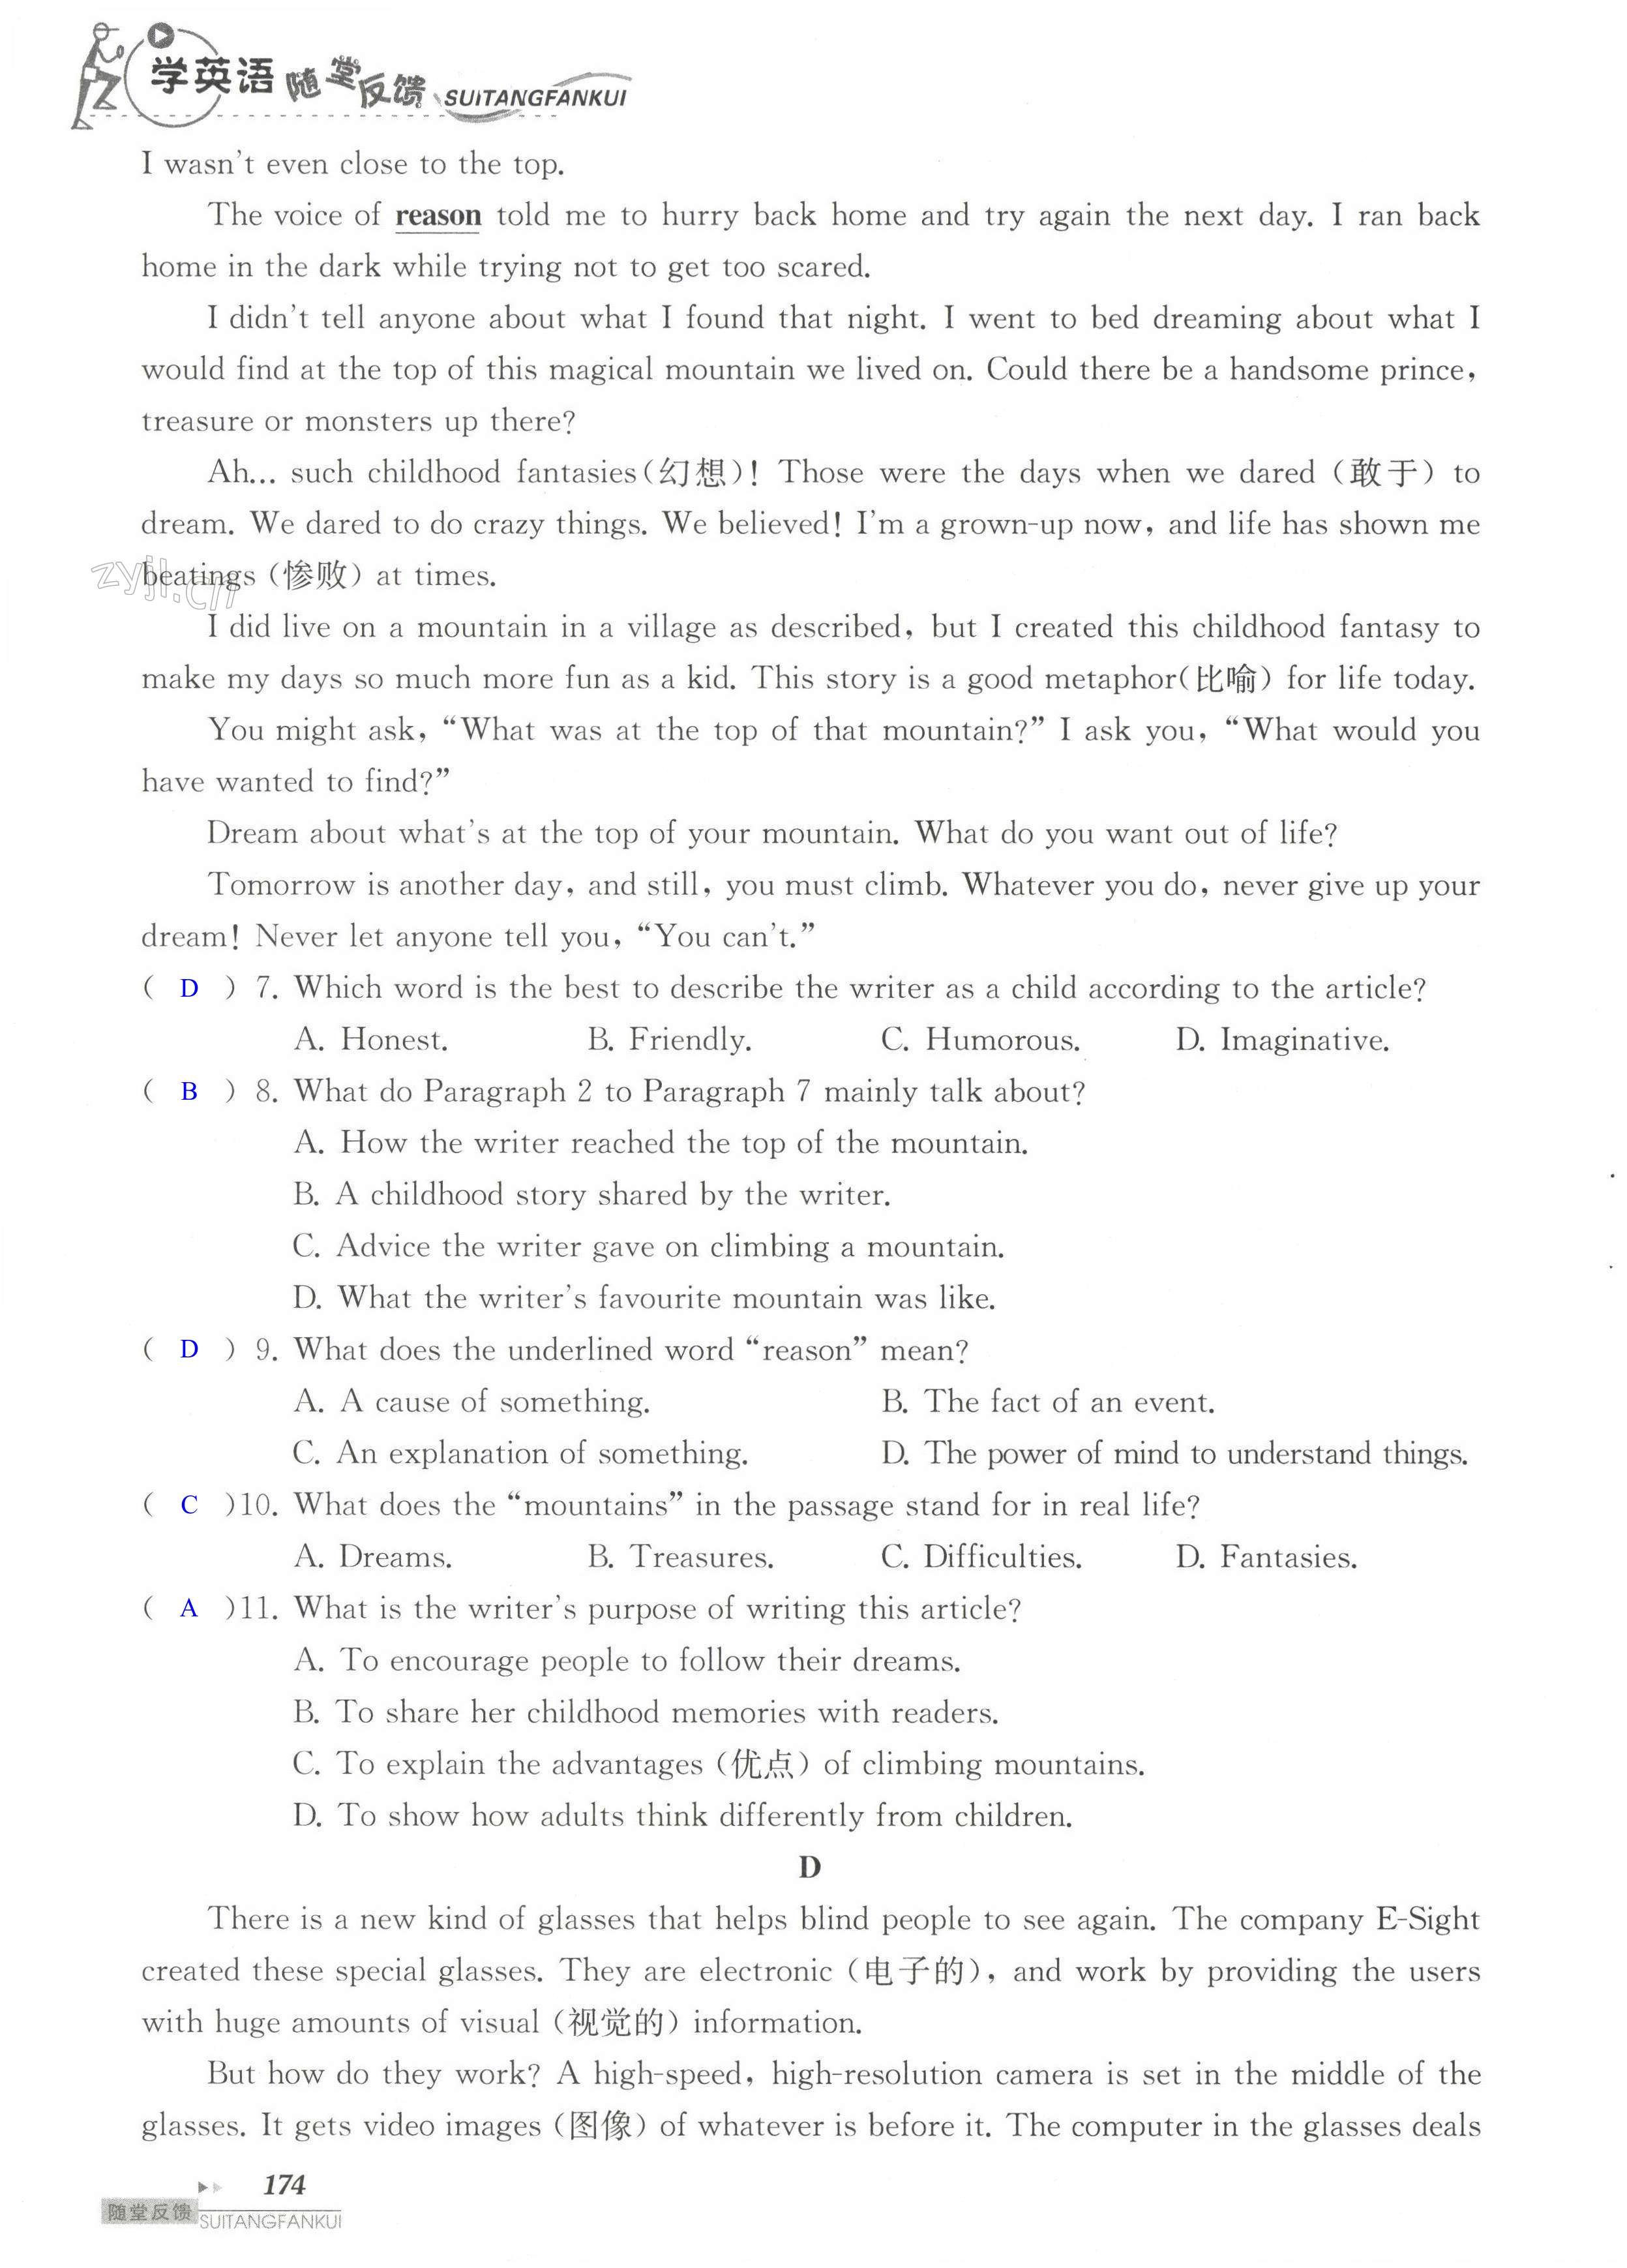 单元综合测试卷 Test for Unit 4 of 9A - 第174页